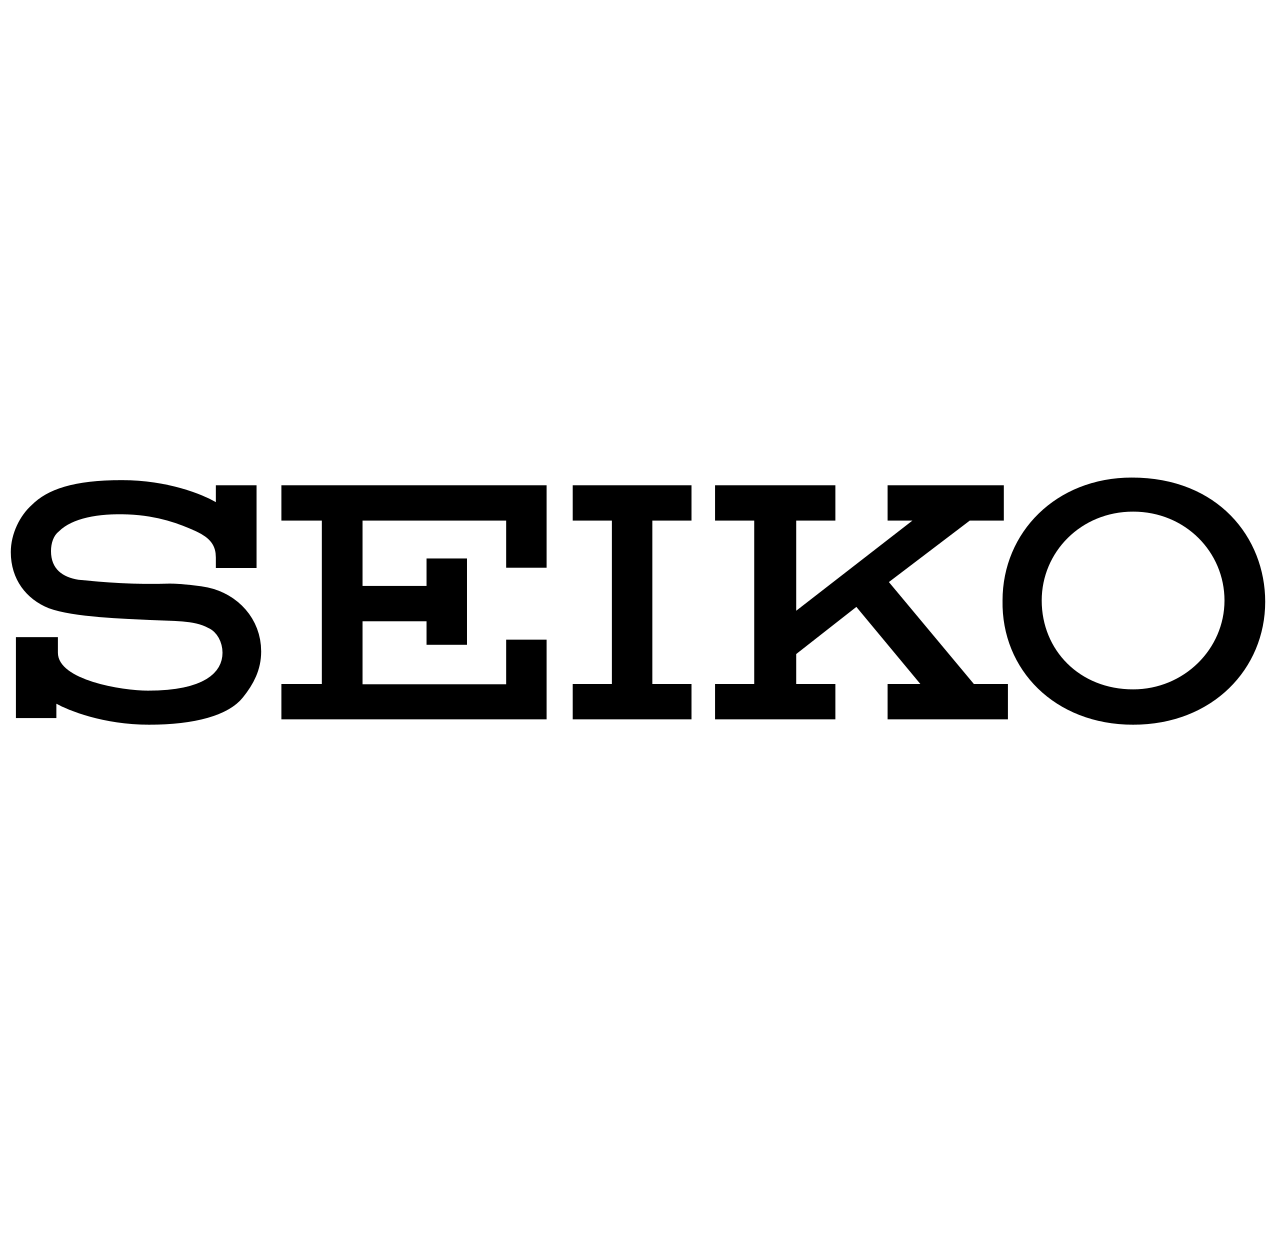 Seiko logooooo 1